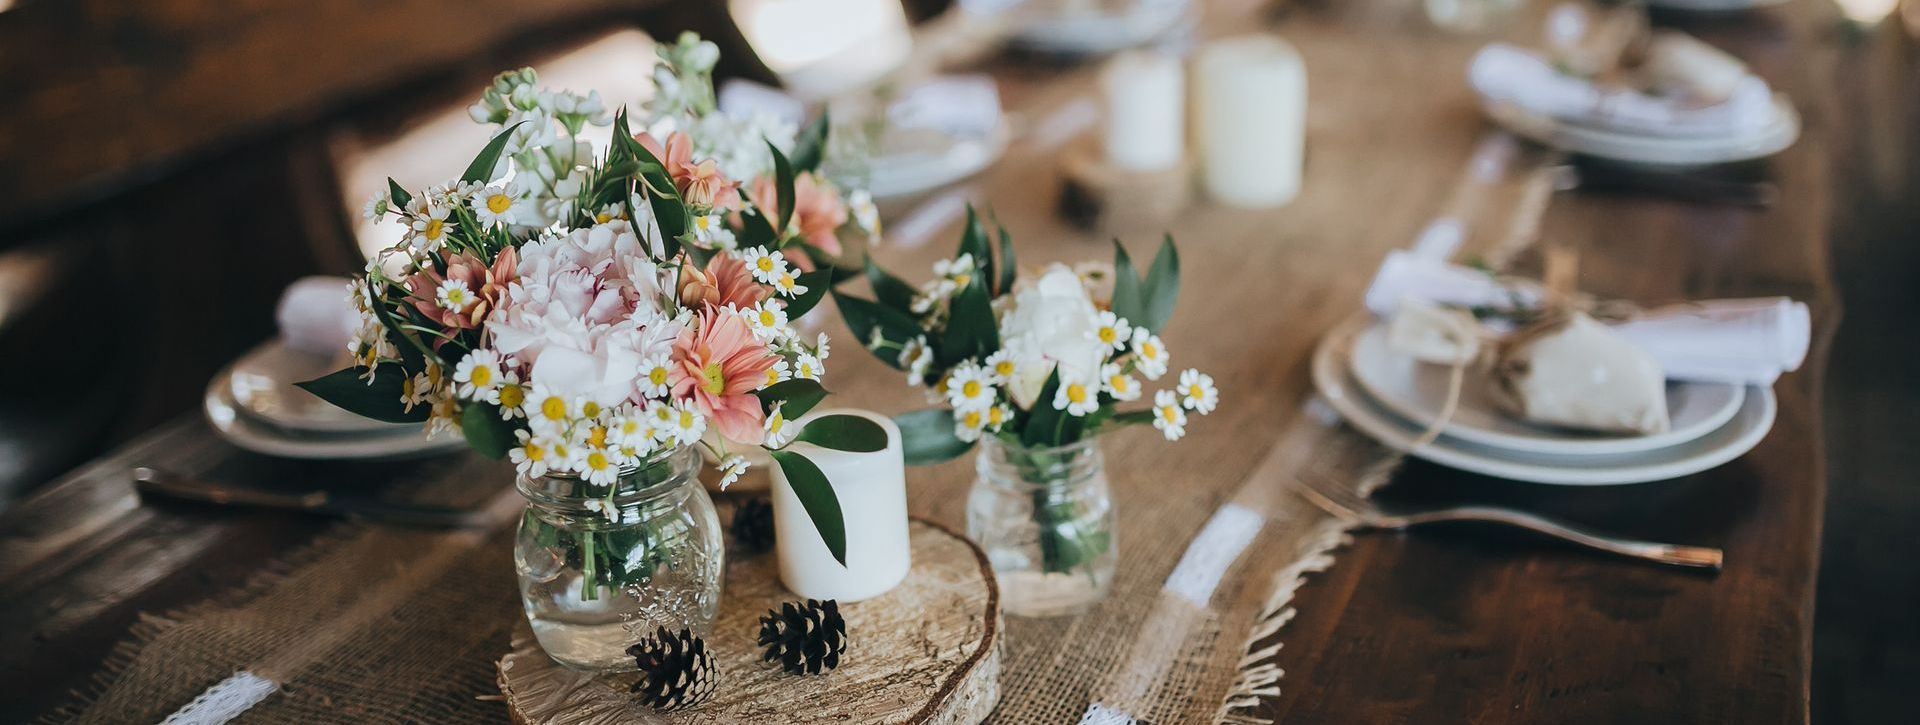 table décoration mariage avec raphia fleurs couverts assiette fete